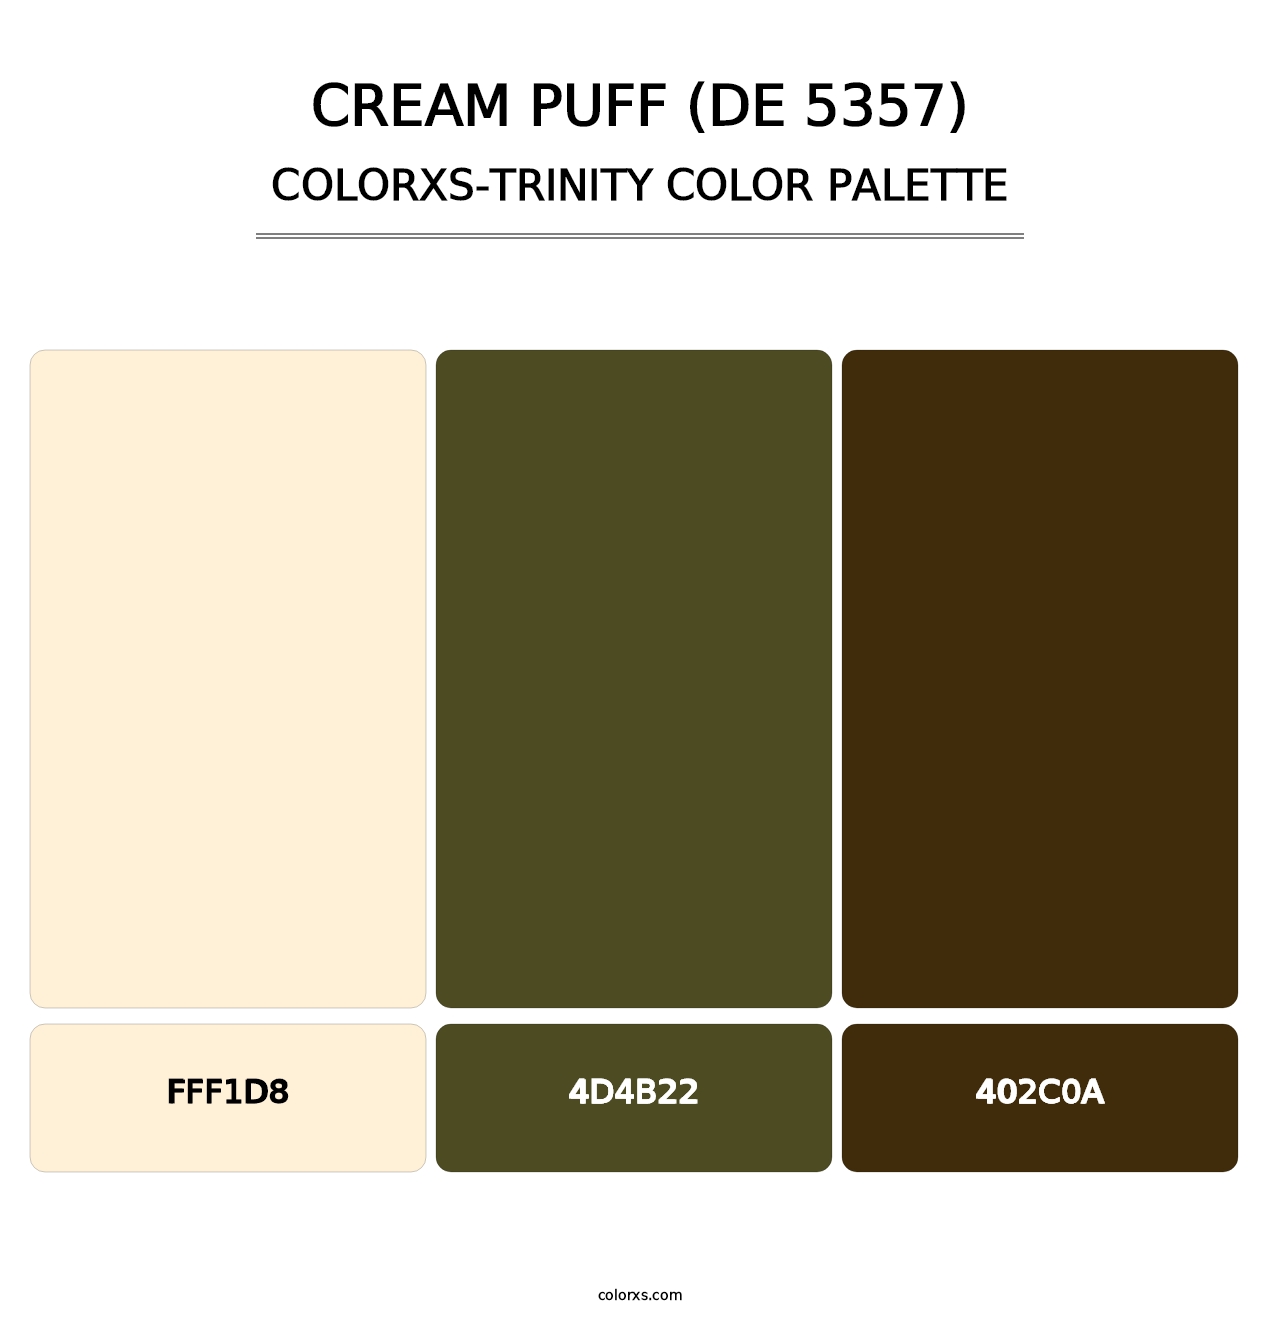 Cream Puff (DE 5357) - Colorxs Trinity Palette